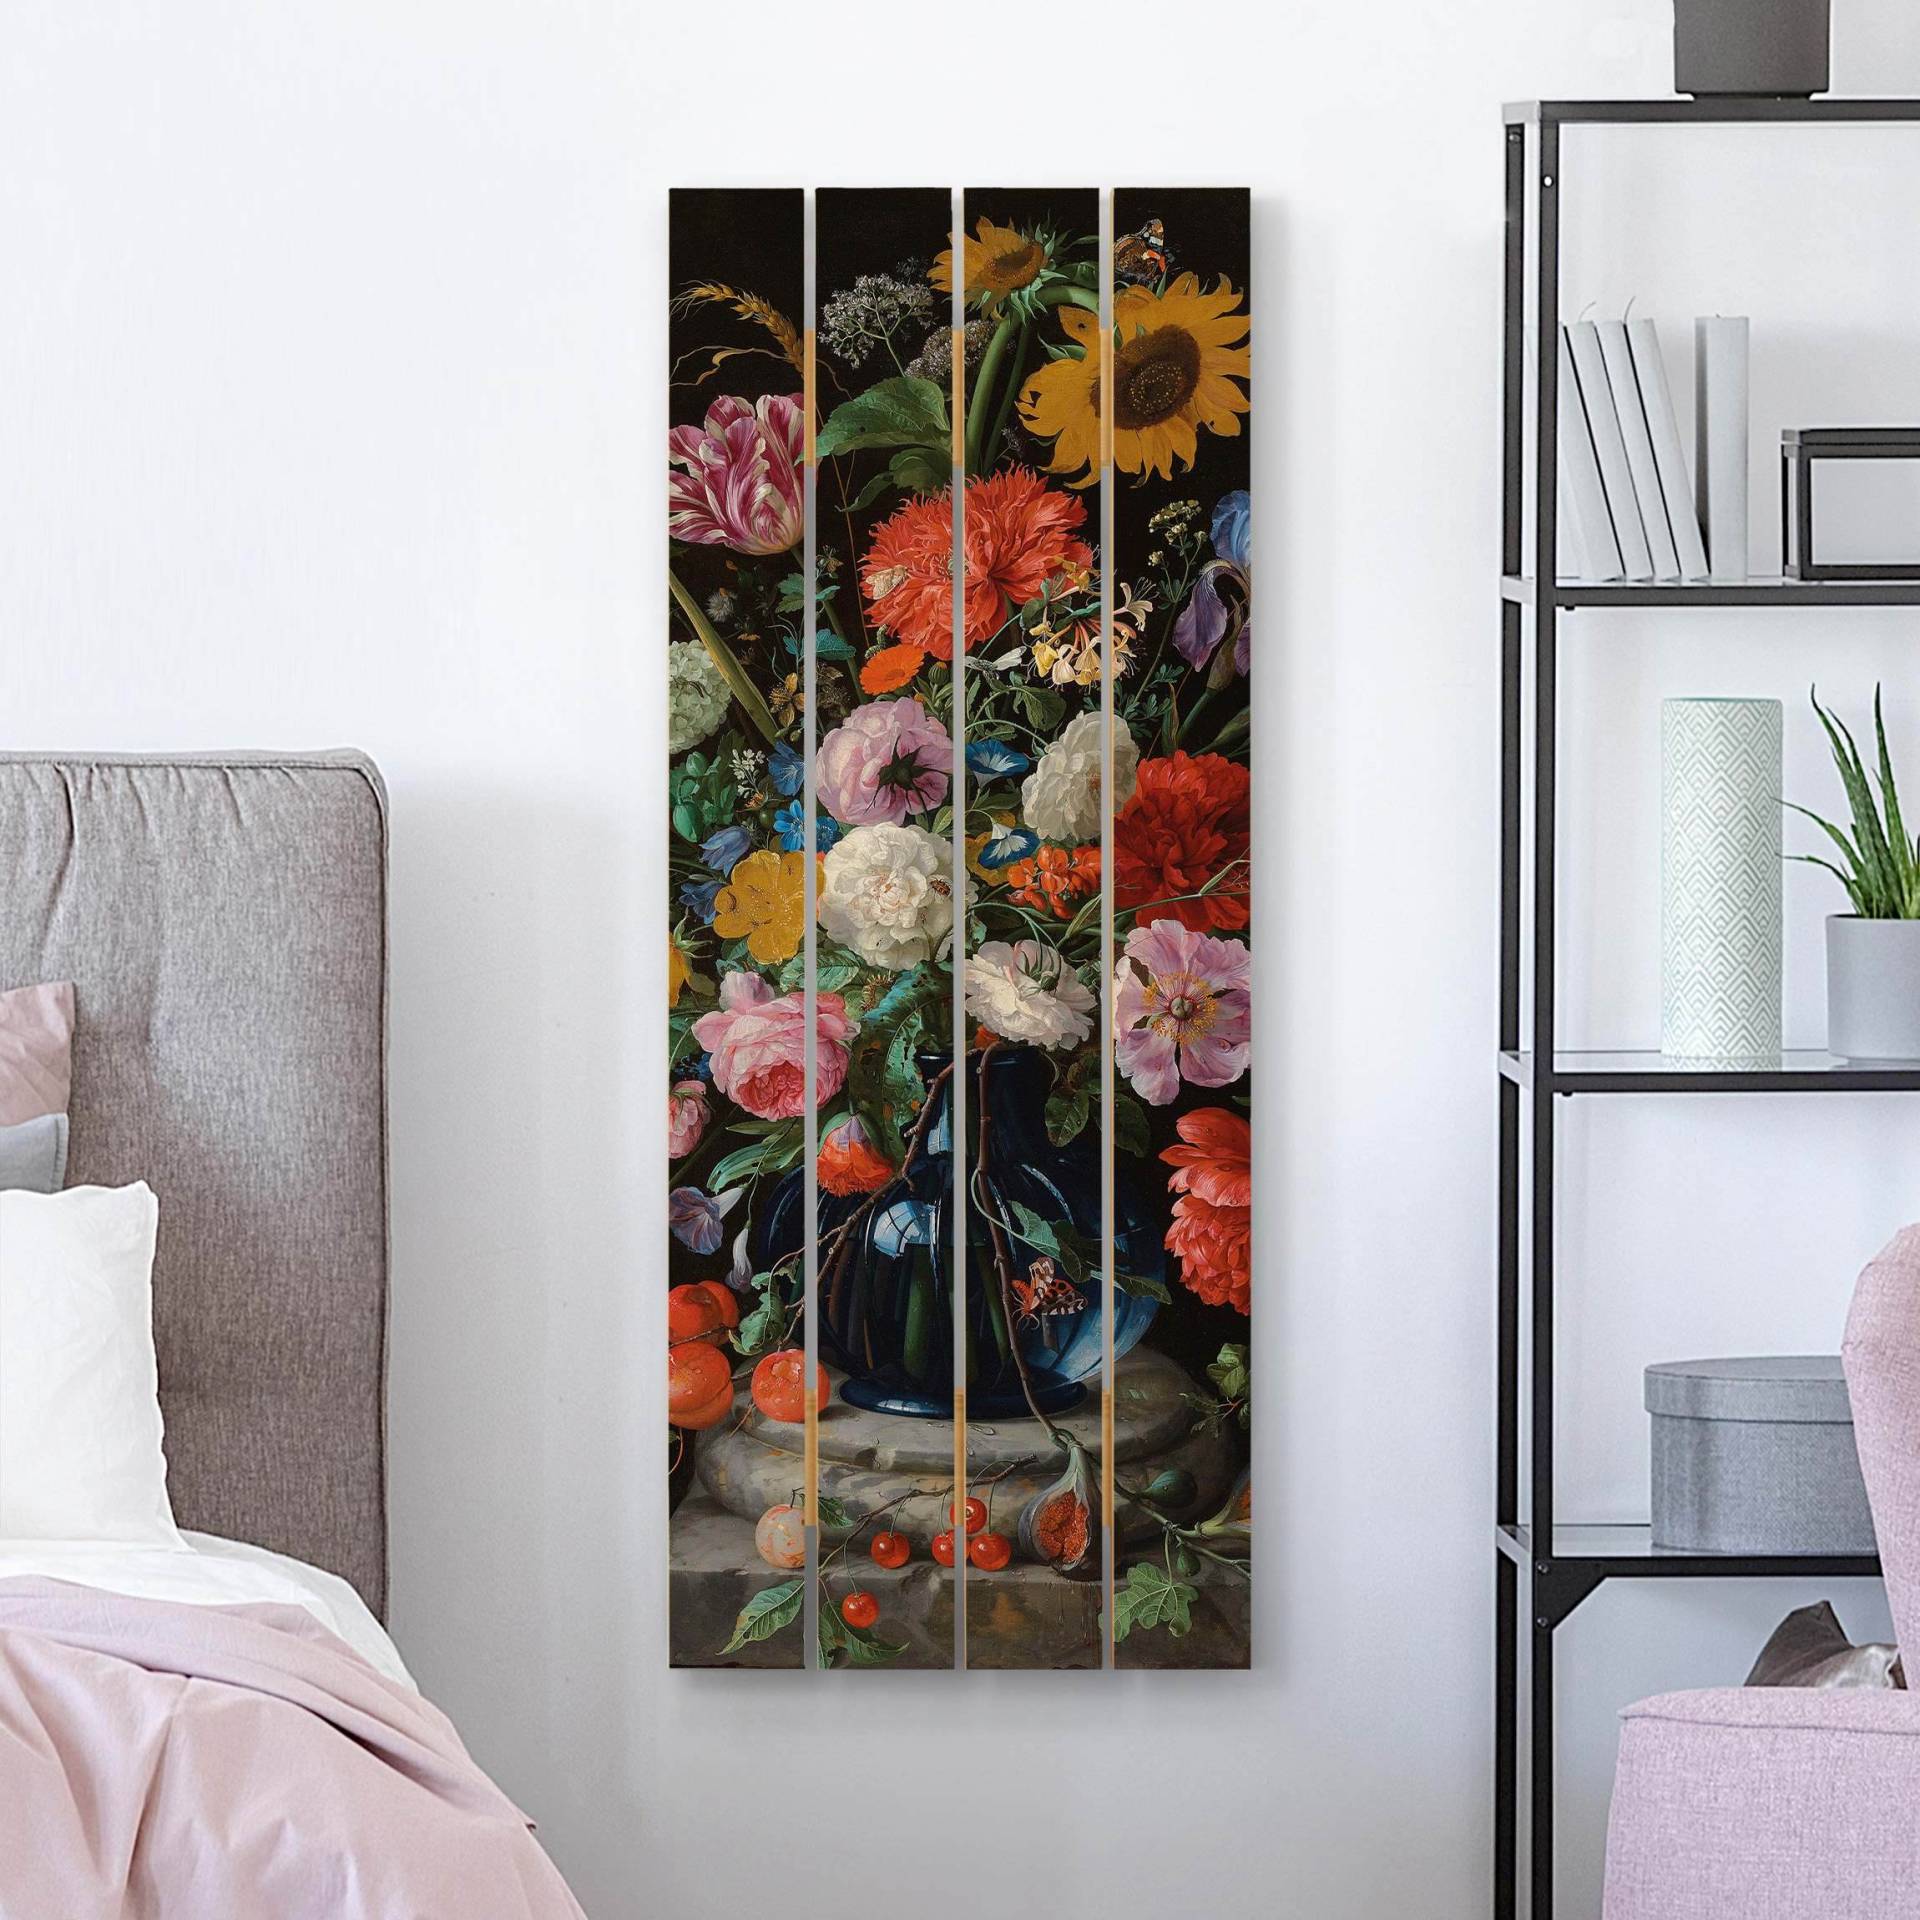 Holzbild Plankenoptik Jan Davidsz de Heem - Glasvase mit Blumen von Klebefieber